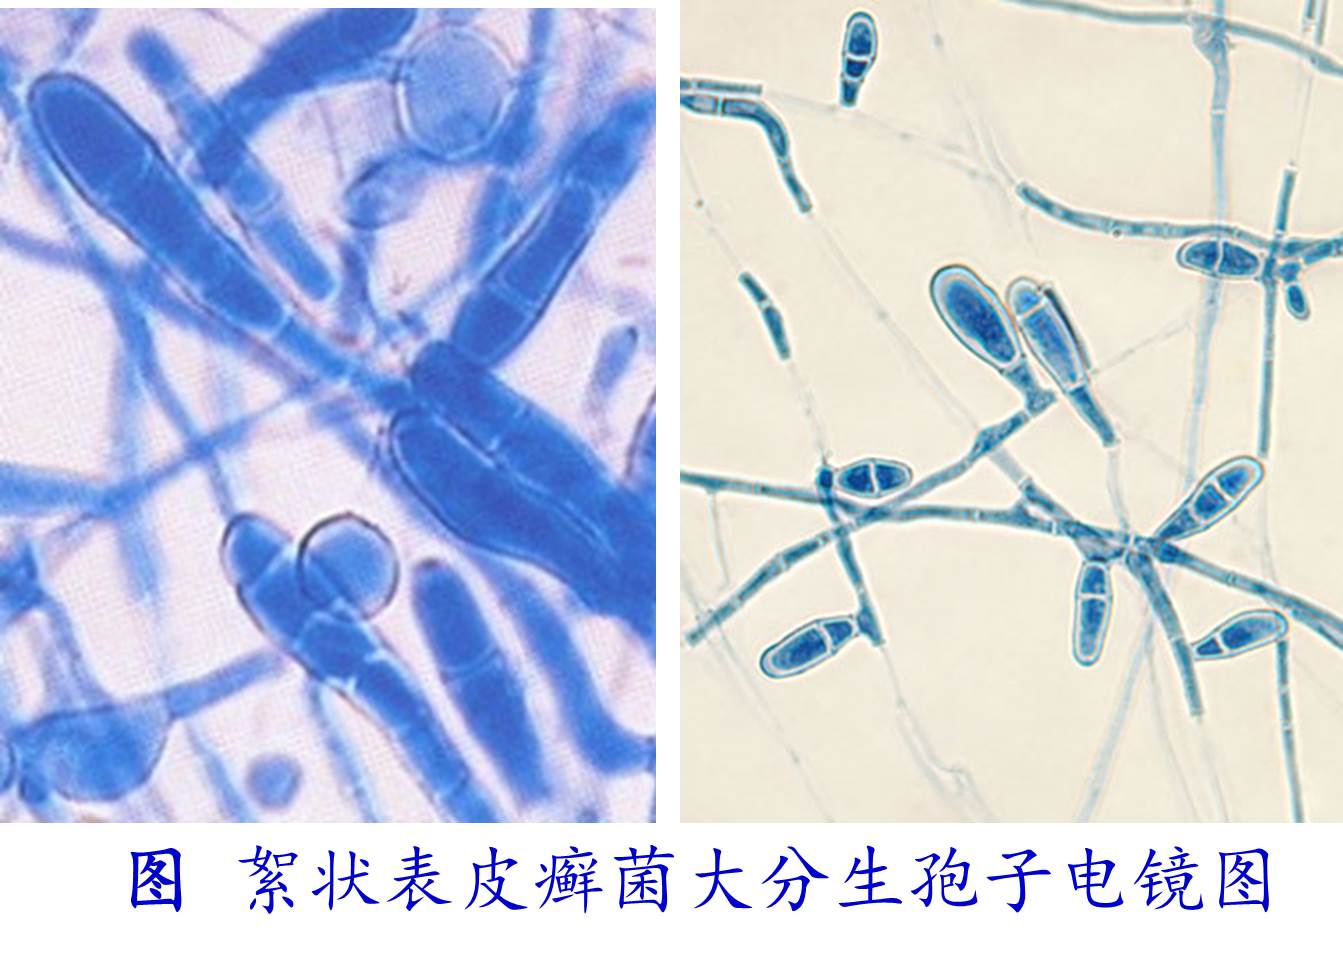 丛枝菌根真菌(AMF)孢子、菌丝密度及侵染率定量测定方法 —BIO-101